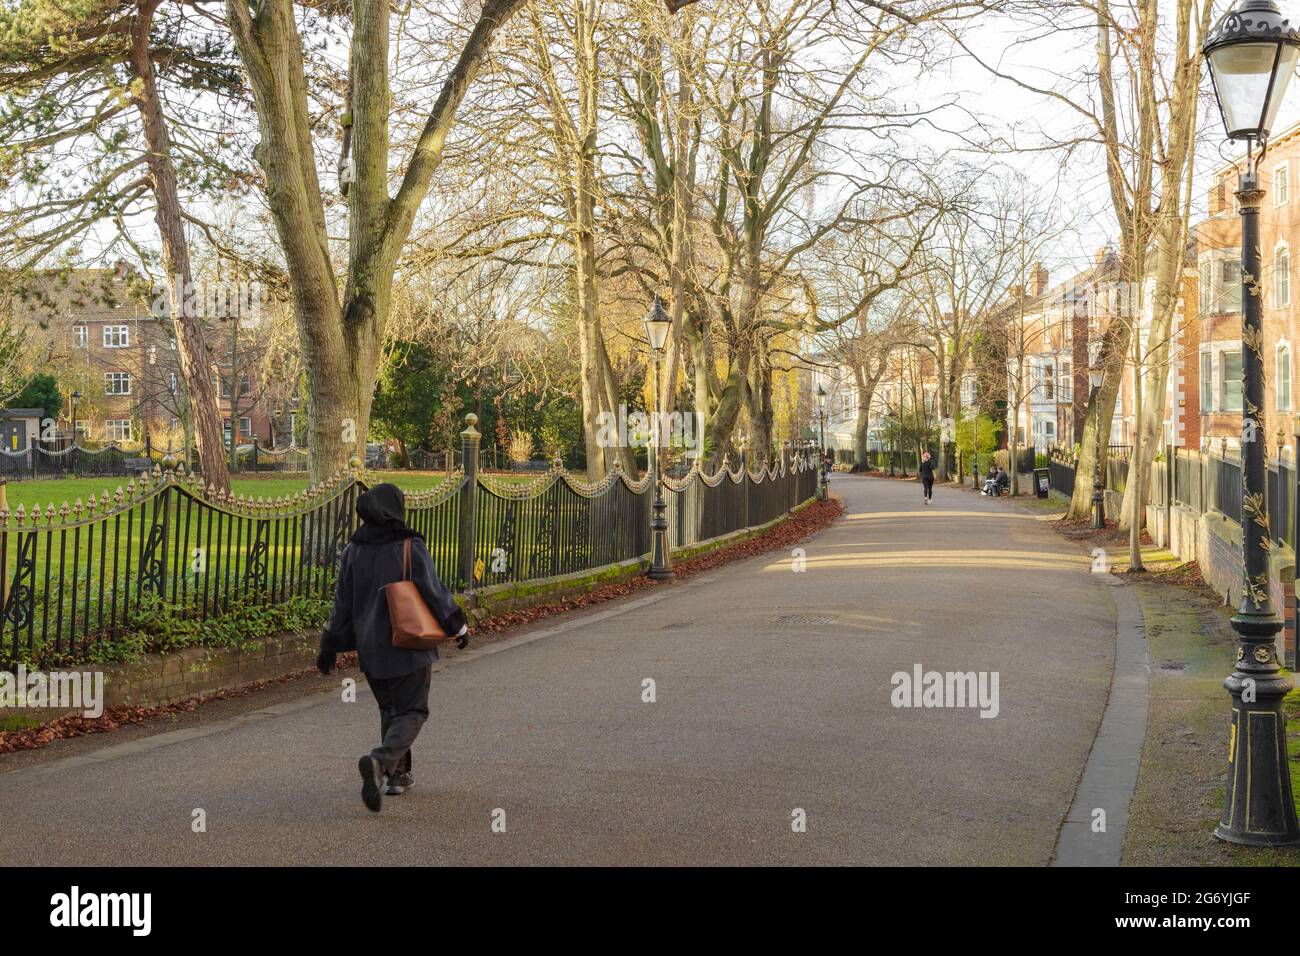 Nouvelle promenade près de University Road et de l'ovale, montre une femme marchant sur la courbe à la passerelle gauche. Passerelle bordée d'arbres avec rambardes sur la gauche. Banque D'Images